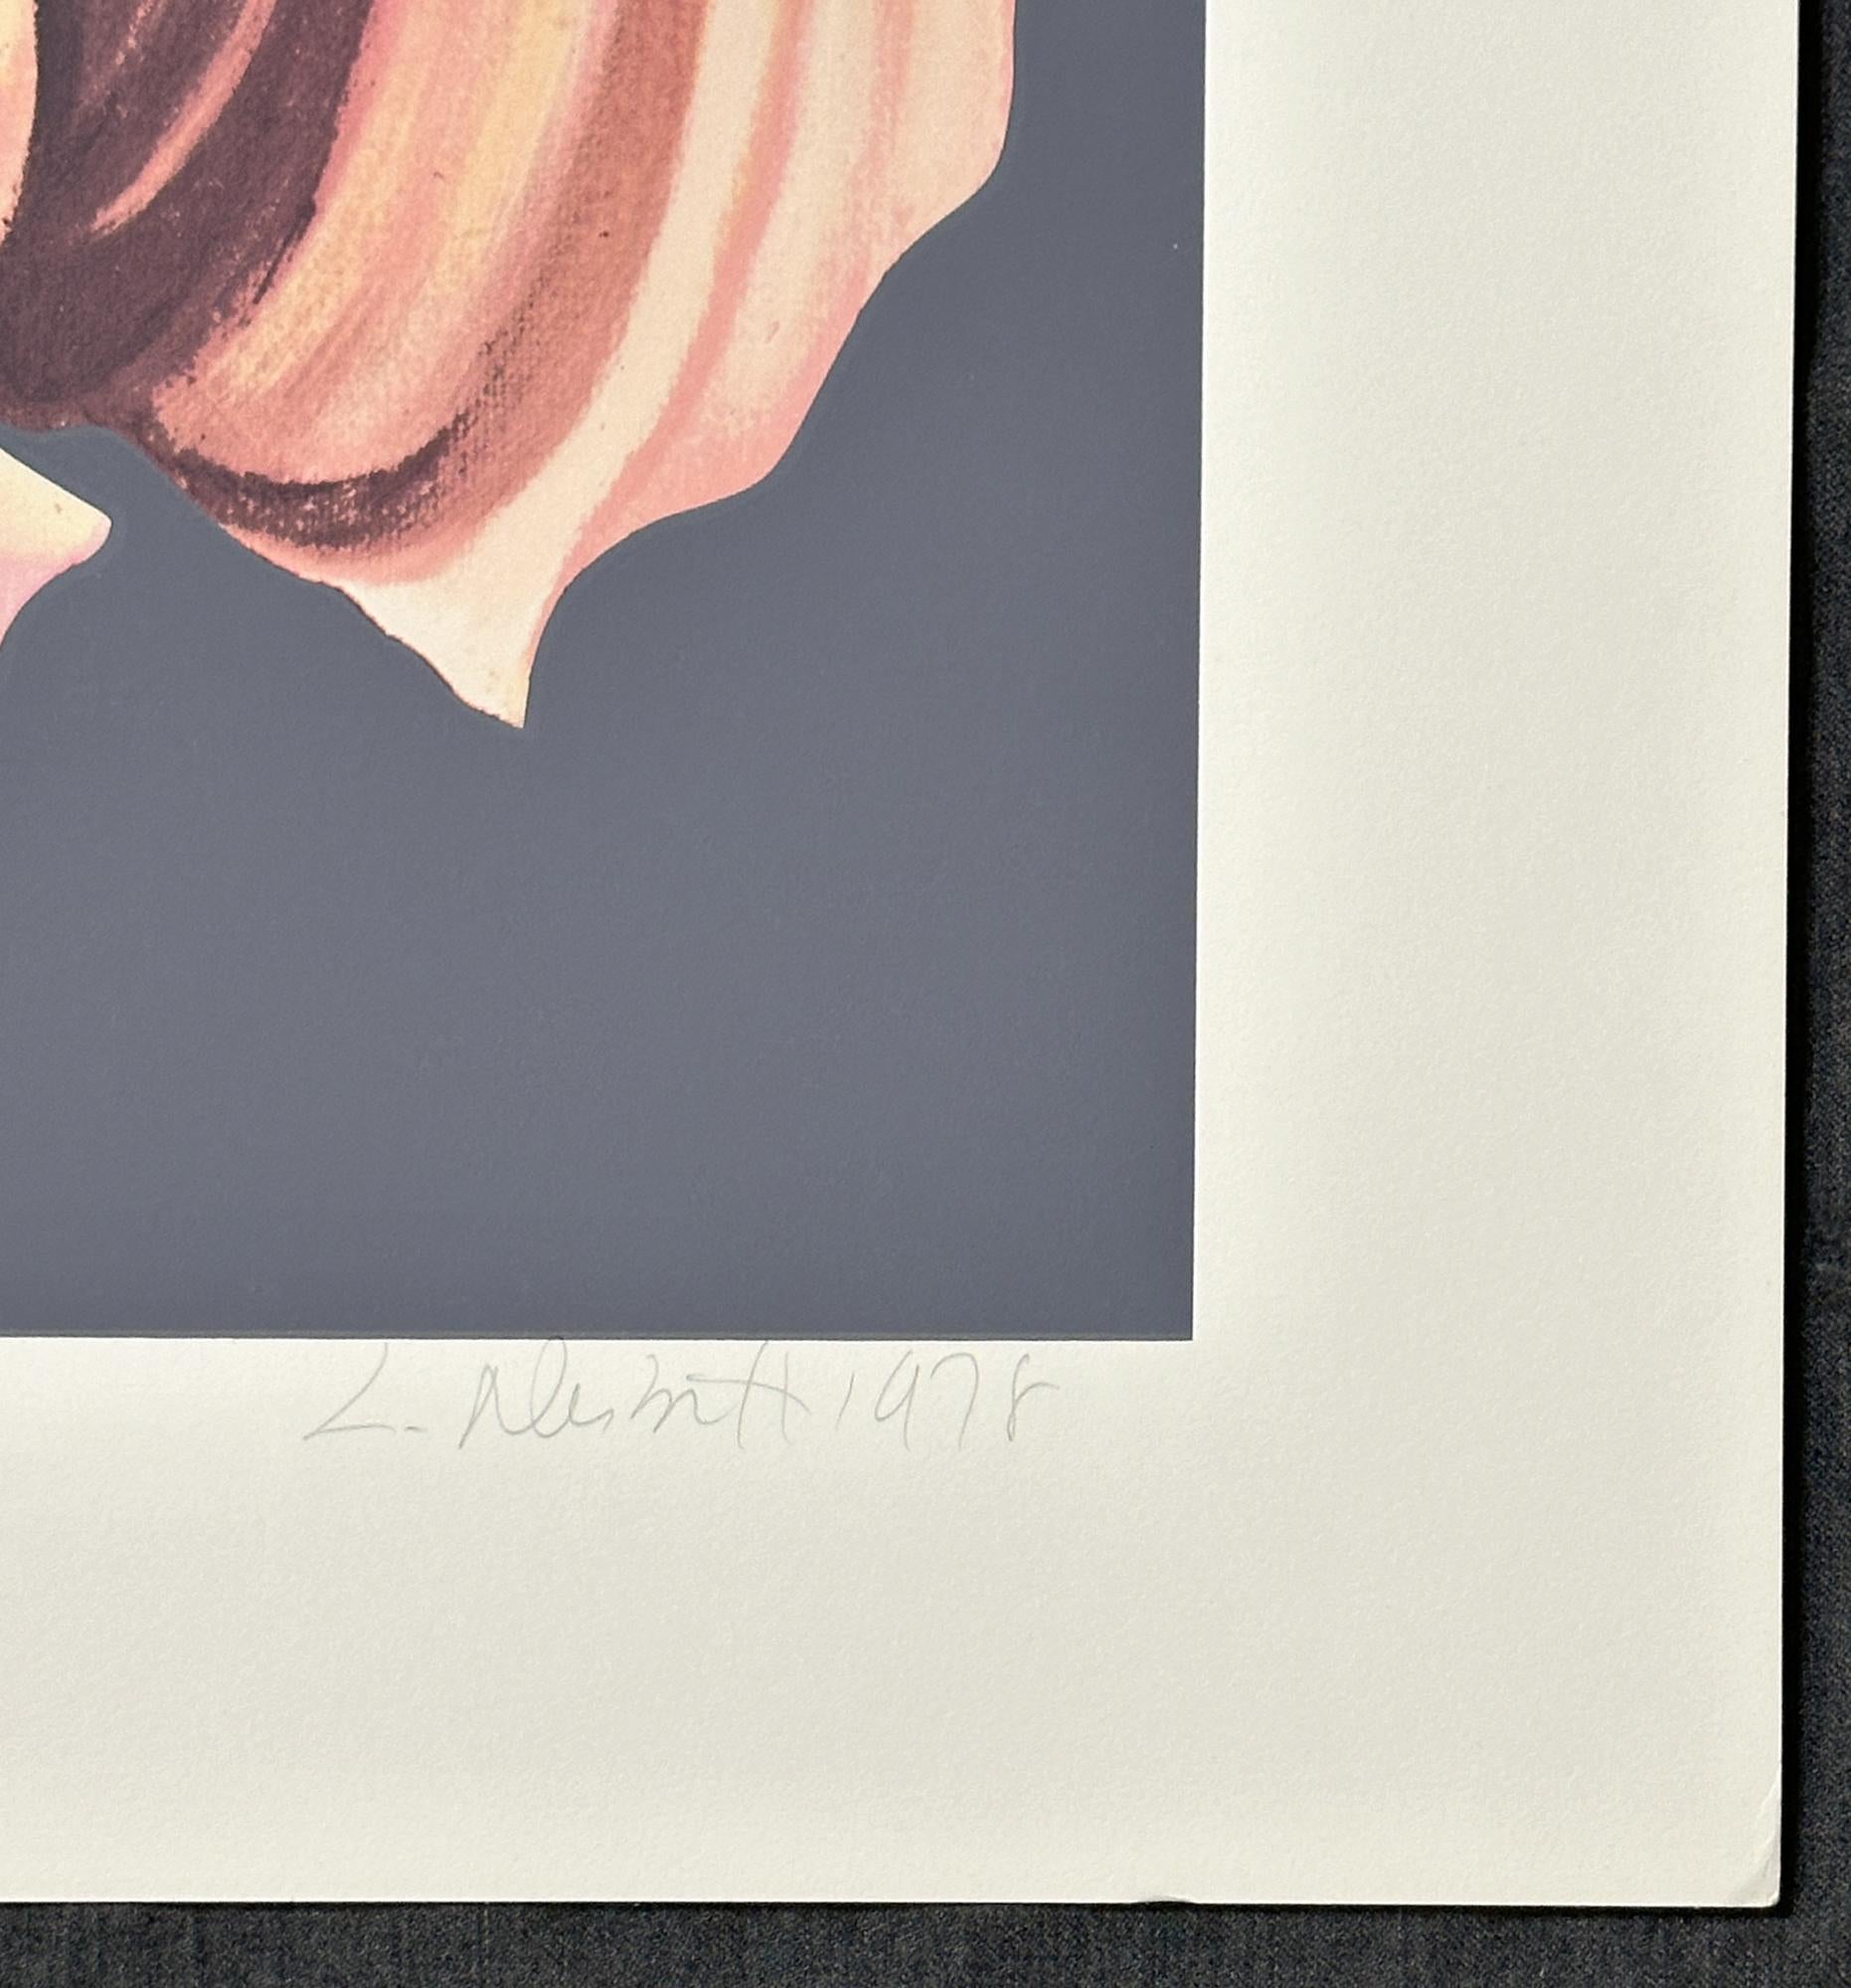 Lowell Nesbitt
Rostige Schwertlilie - 1979
Siebdruck auf Arches Archivpapier   
29'' x 29'' Zoll
Auflage: Mit Bleistift signiert, datiert und bezeichnet 151/175

Lowell Nesbitt entwickelte sich zu einem der wichtigsten amerikanischen Künstler, die